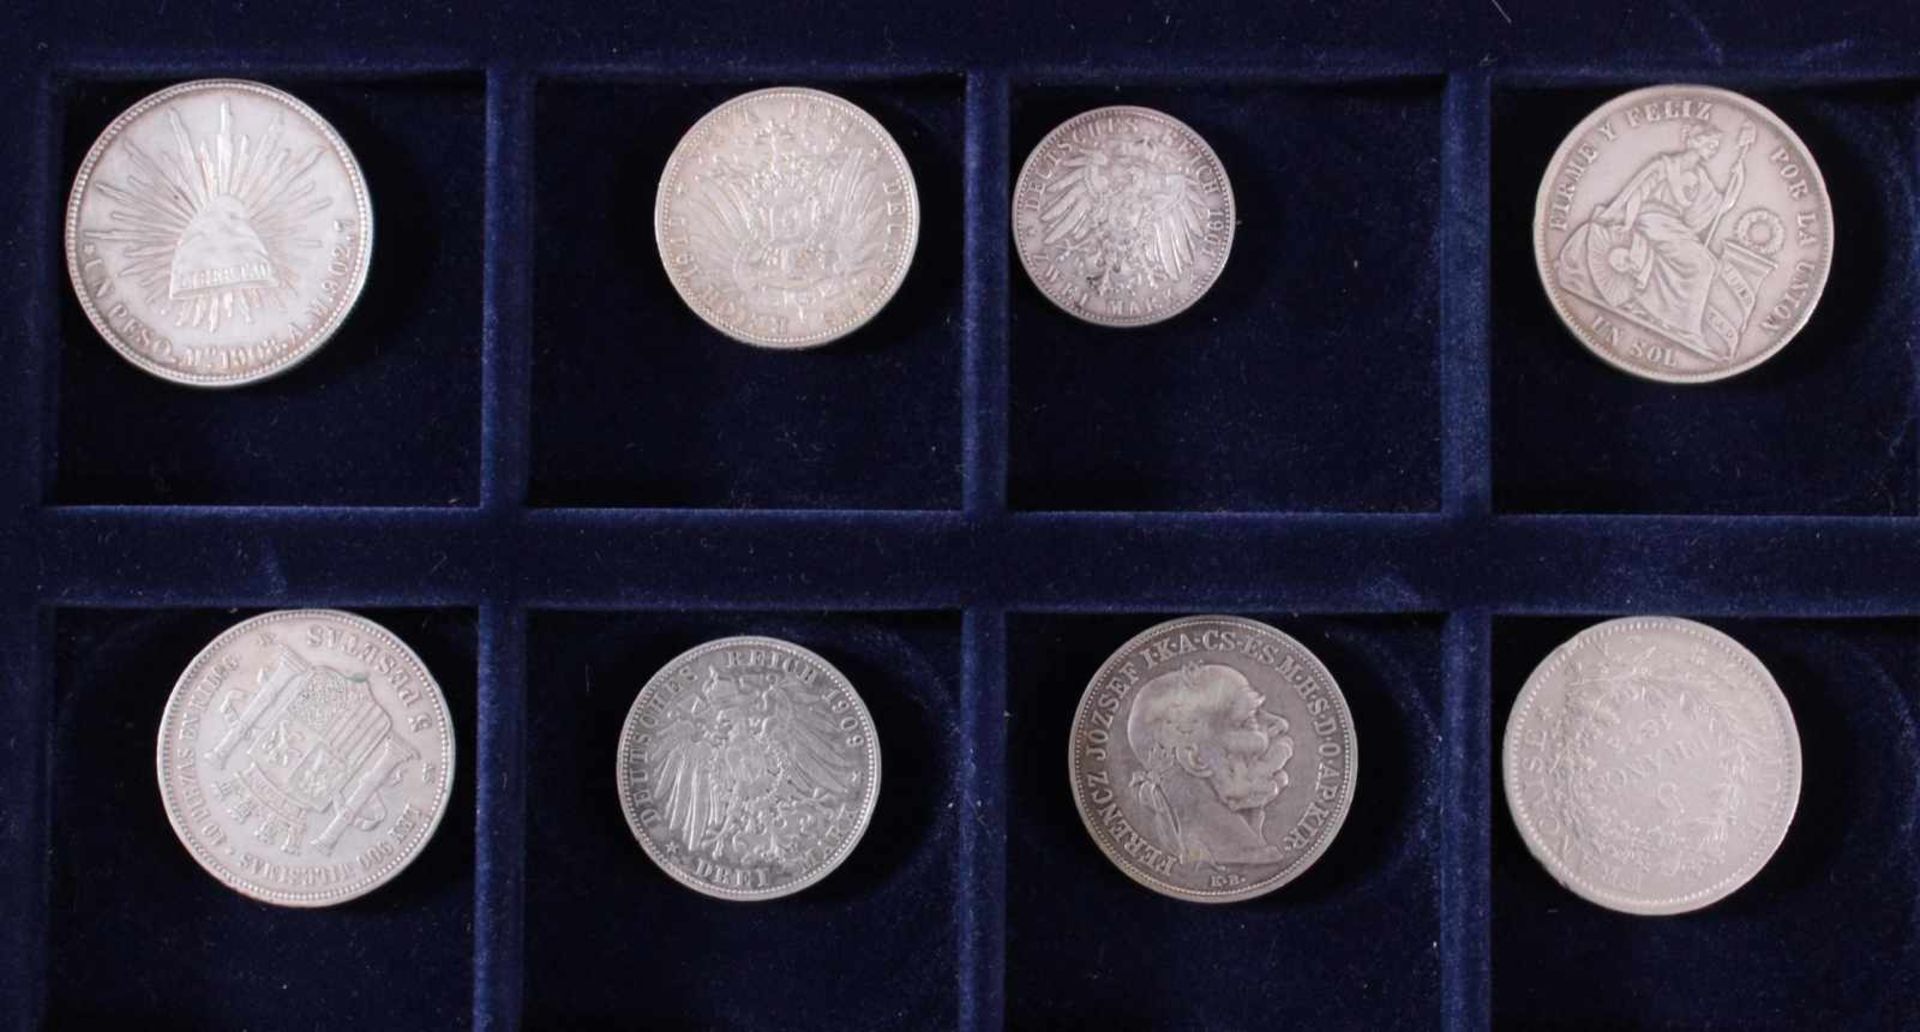 Sammlung Silbermünzen um 1900 in hölzerner Sammelbox1x Un Peso von 1908, D-3,9 cm, 27,2 g in vz.